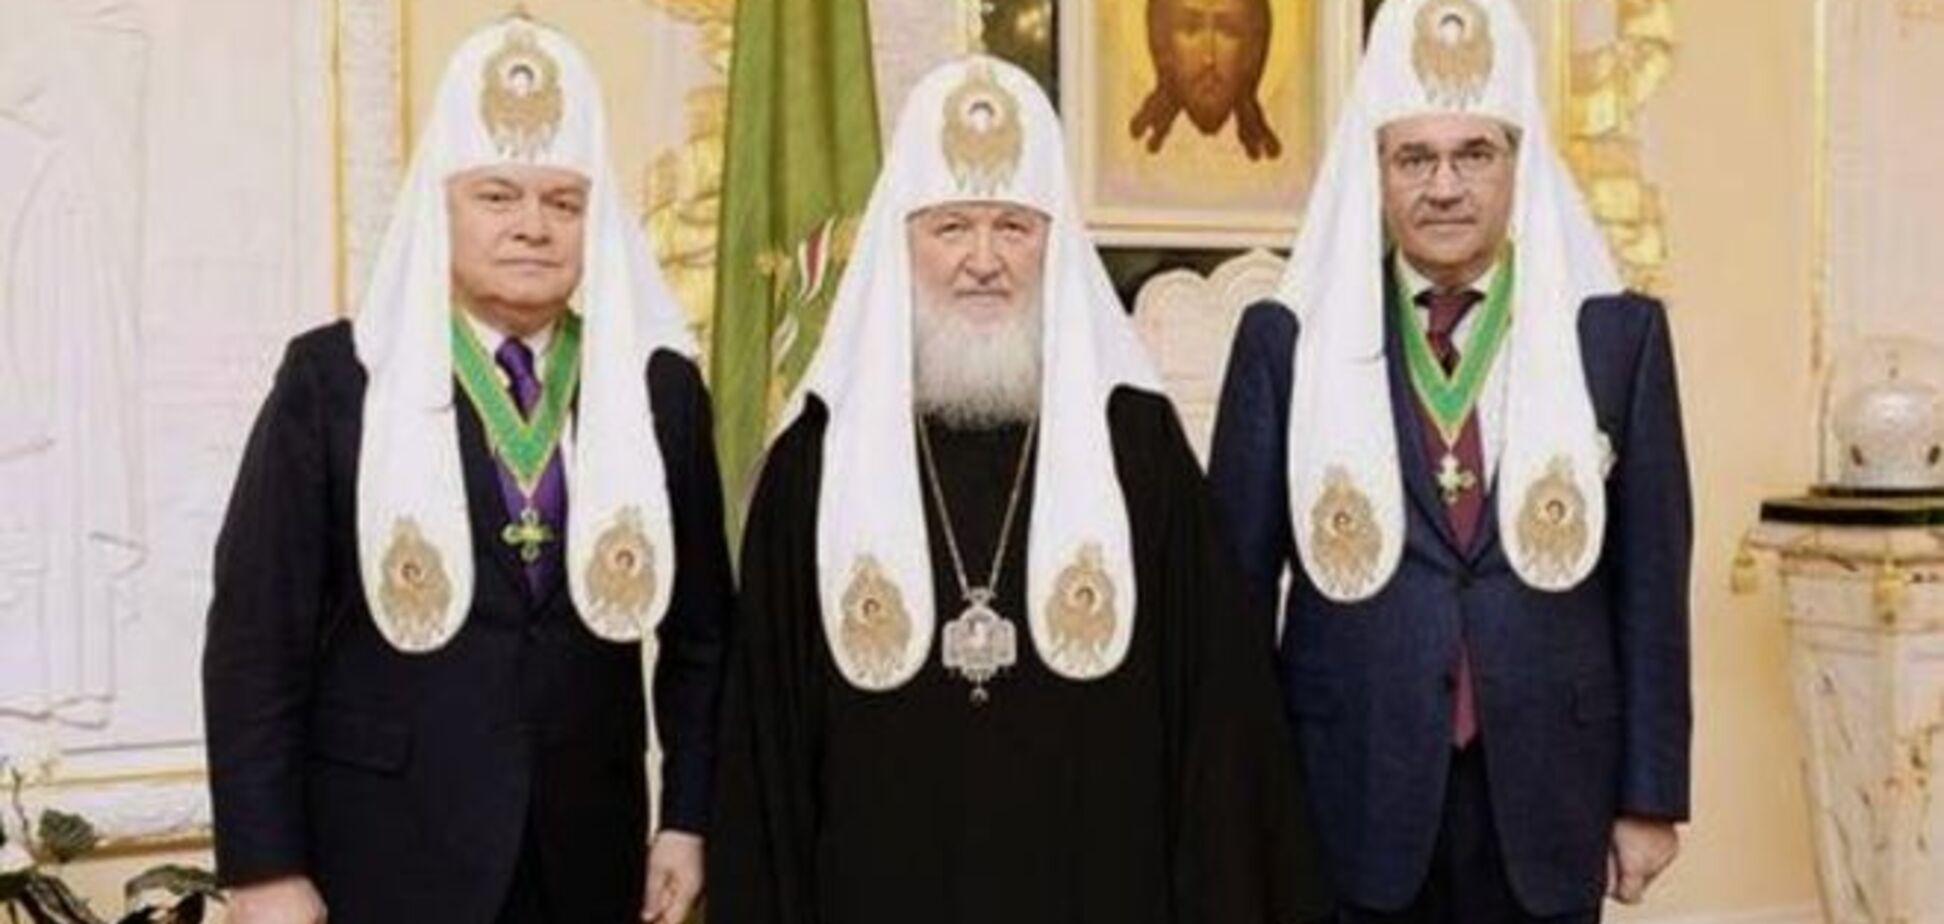 Кураев радуется, что позицию патриарха Кирилла по Украине определяет МИД, а не ФСБ